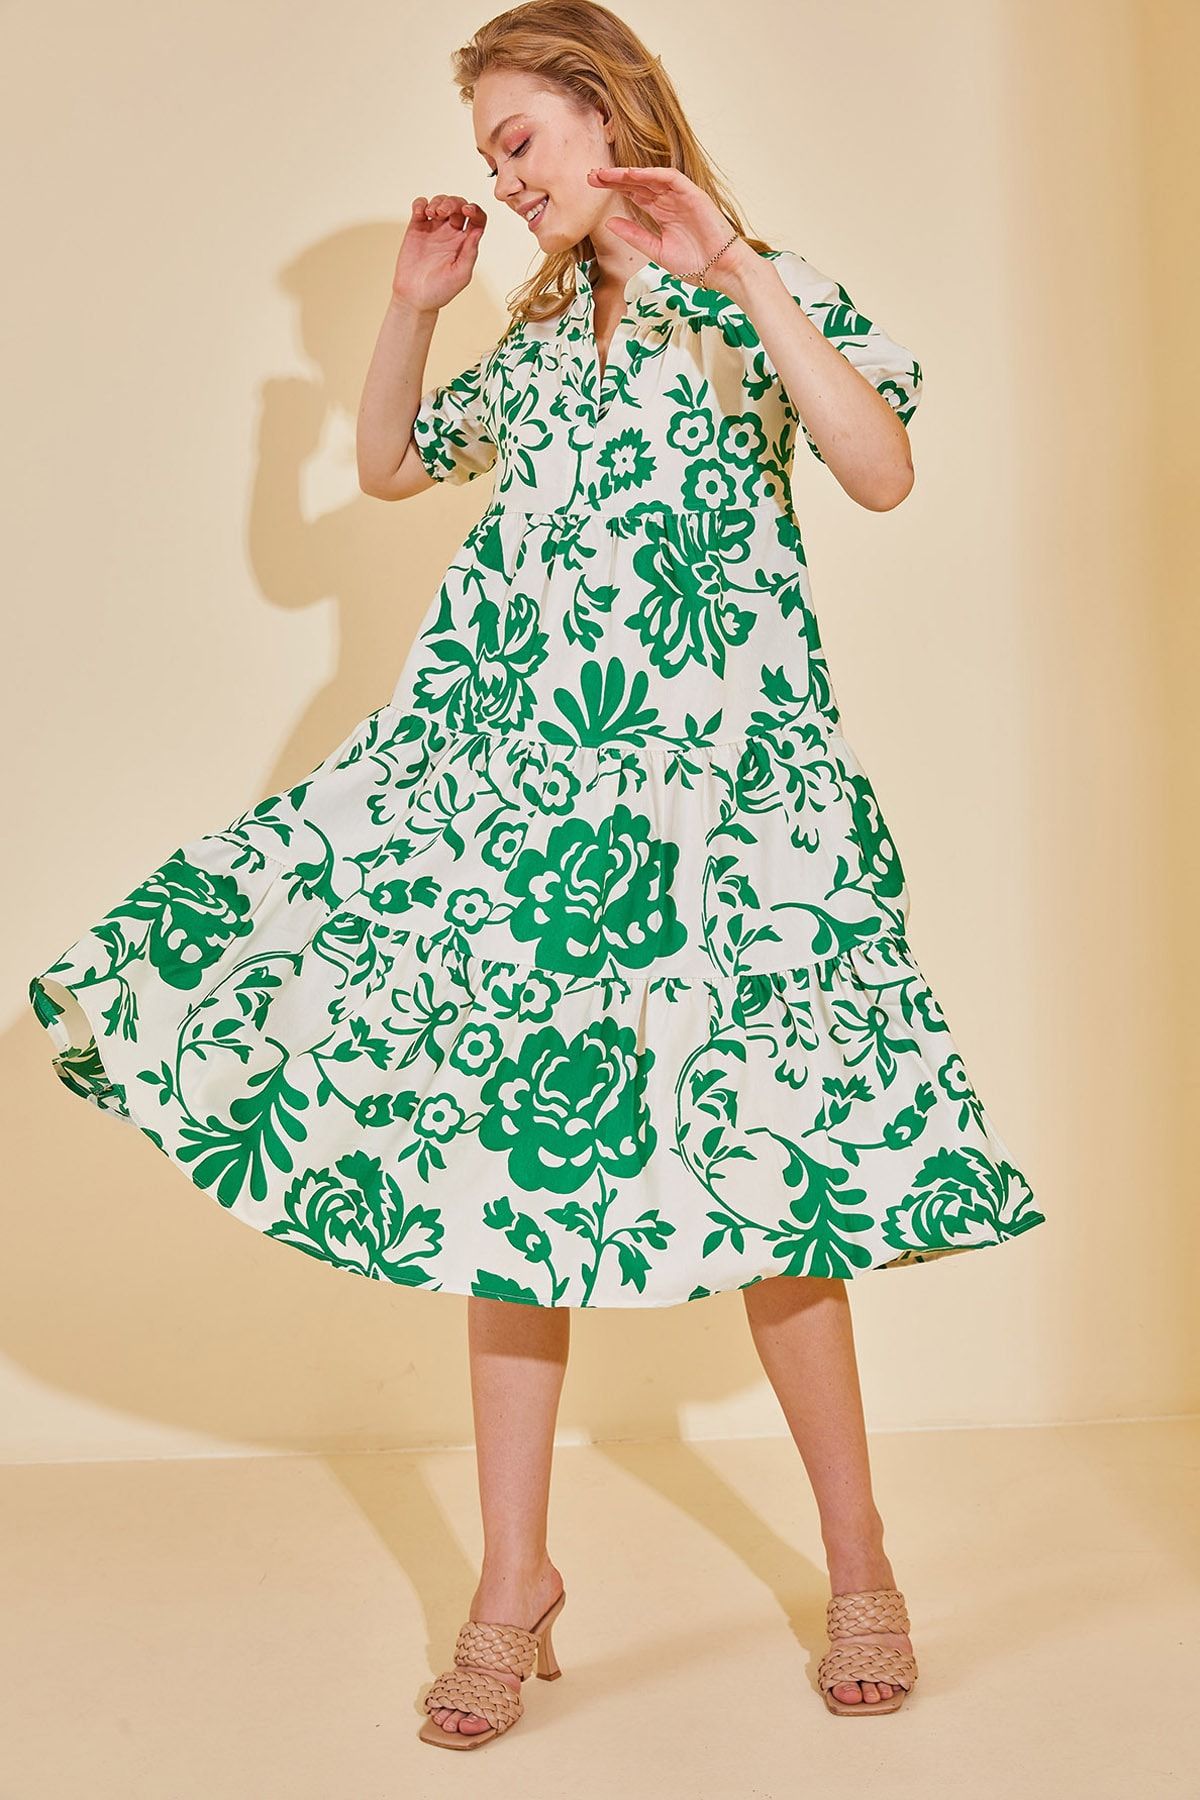 XHAN Kadın Koyu Yeşil Karpuz Kol Desenli Elbise 2YZK6-12603-44